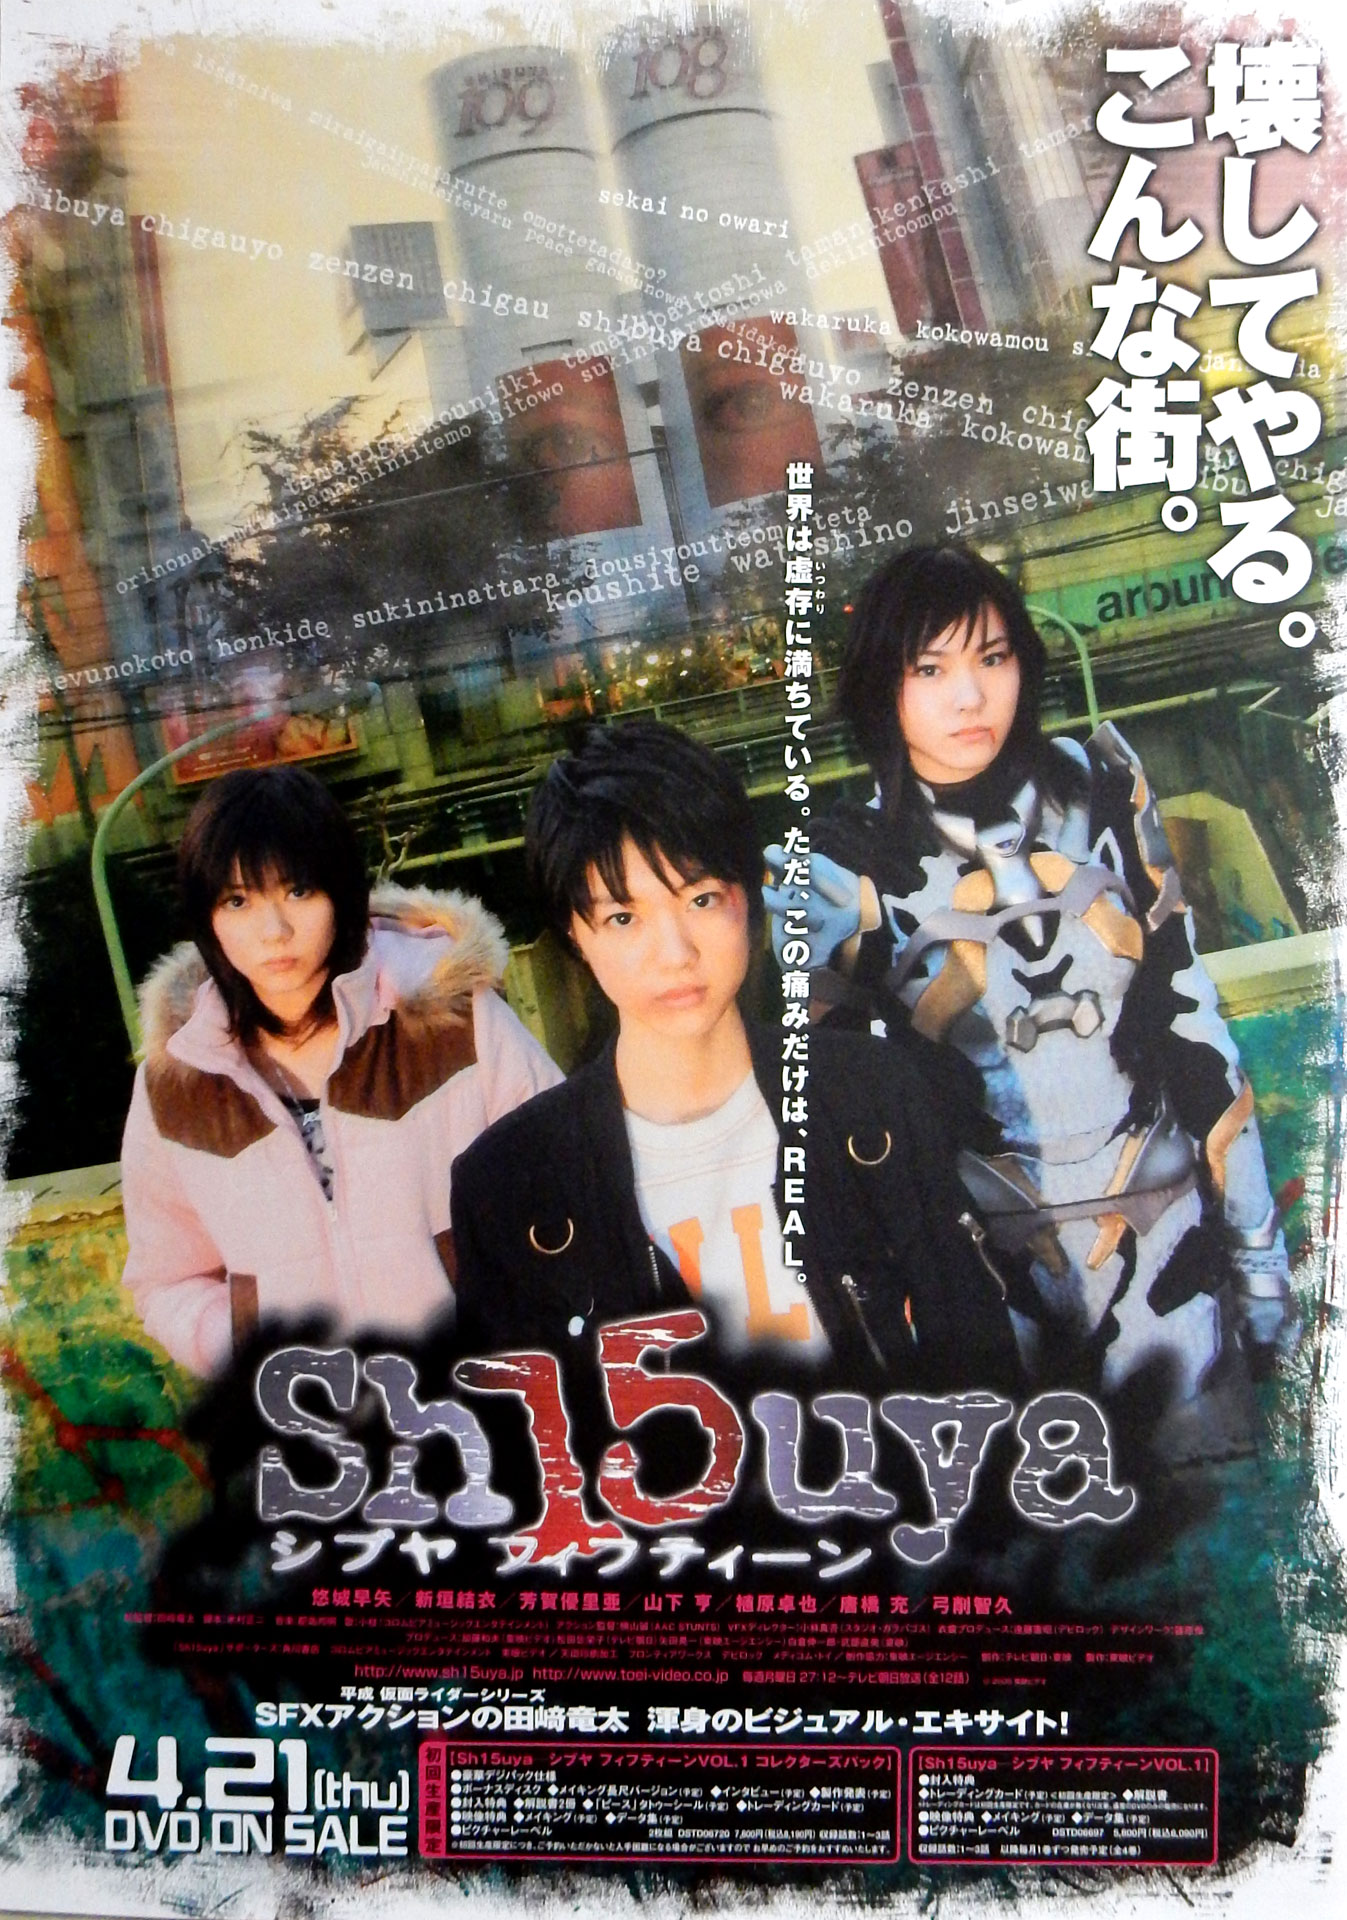 Sh15uya シブヤフィフティーン VOL.1(悠城早矢)のポスター